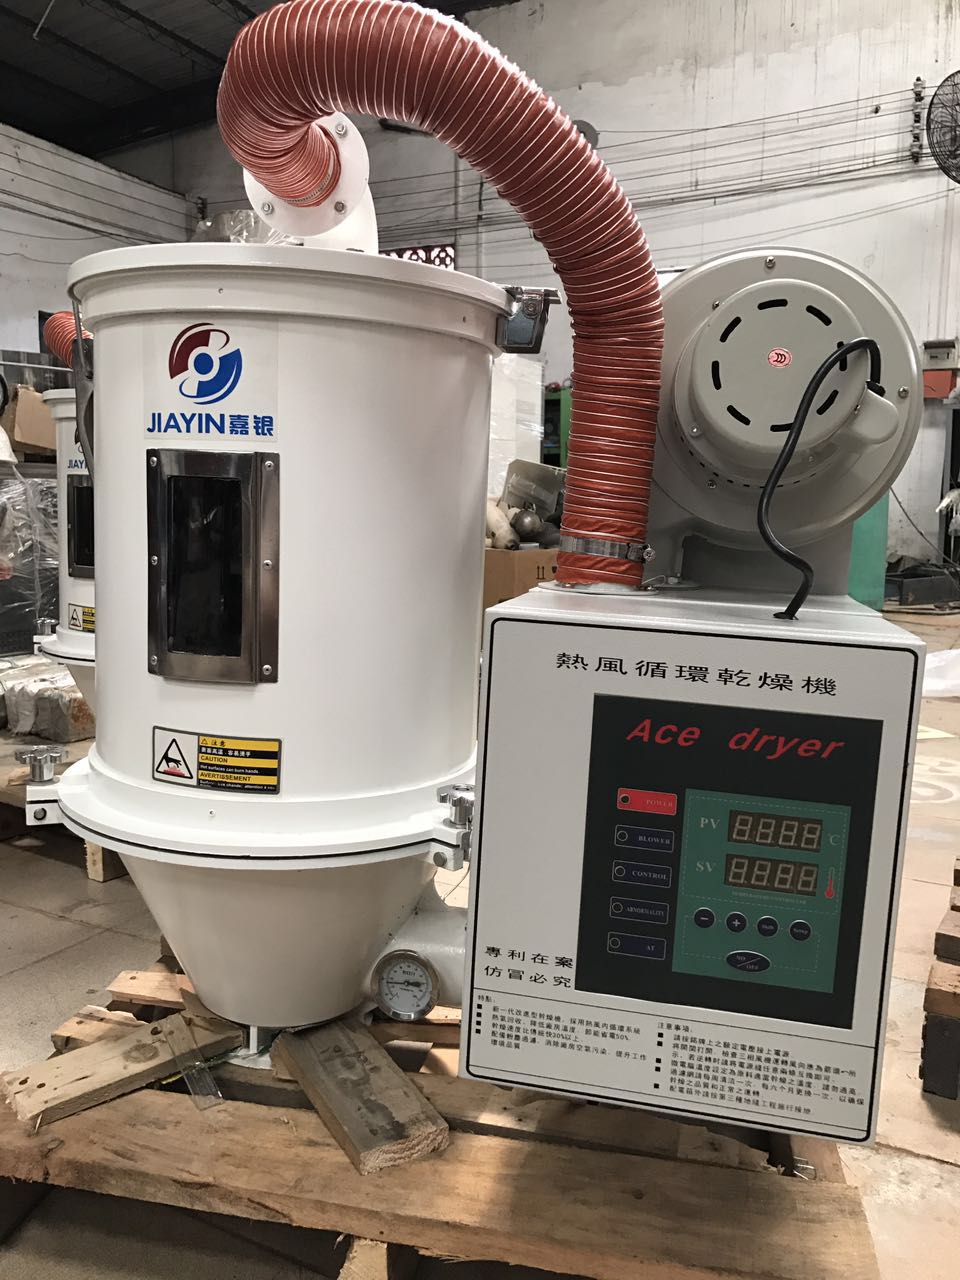 50KG热循环干燥机厂家广州嘉银自动化设备50KG热循环干燥机厂家特价直销